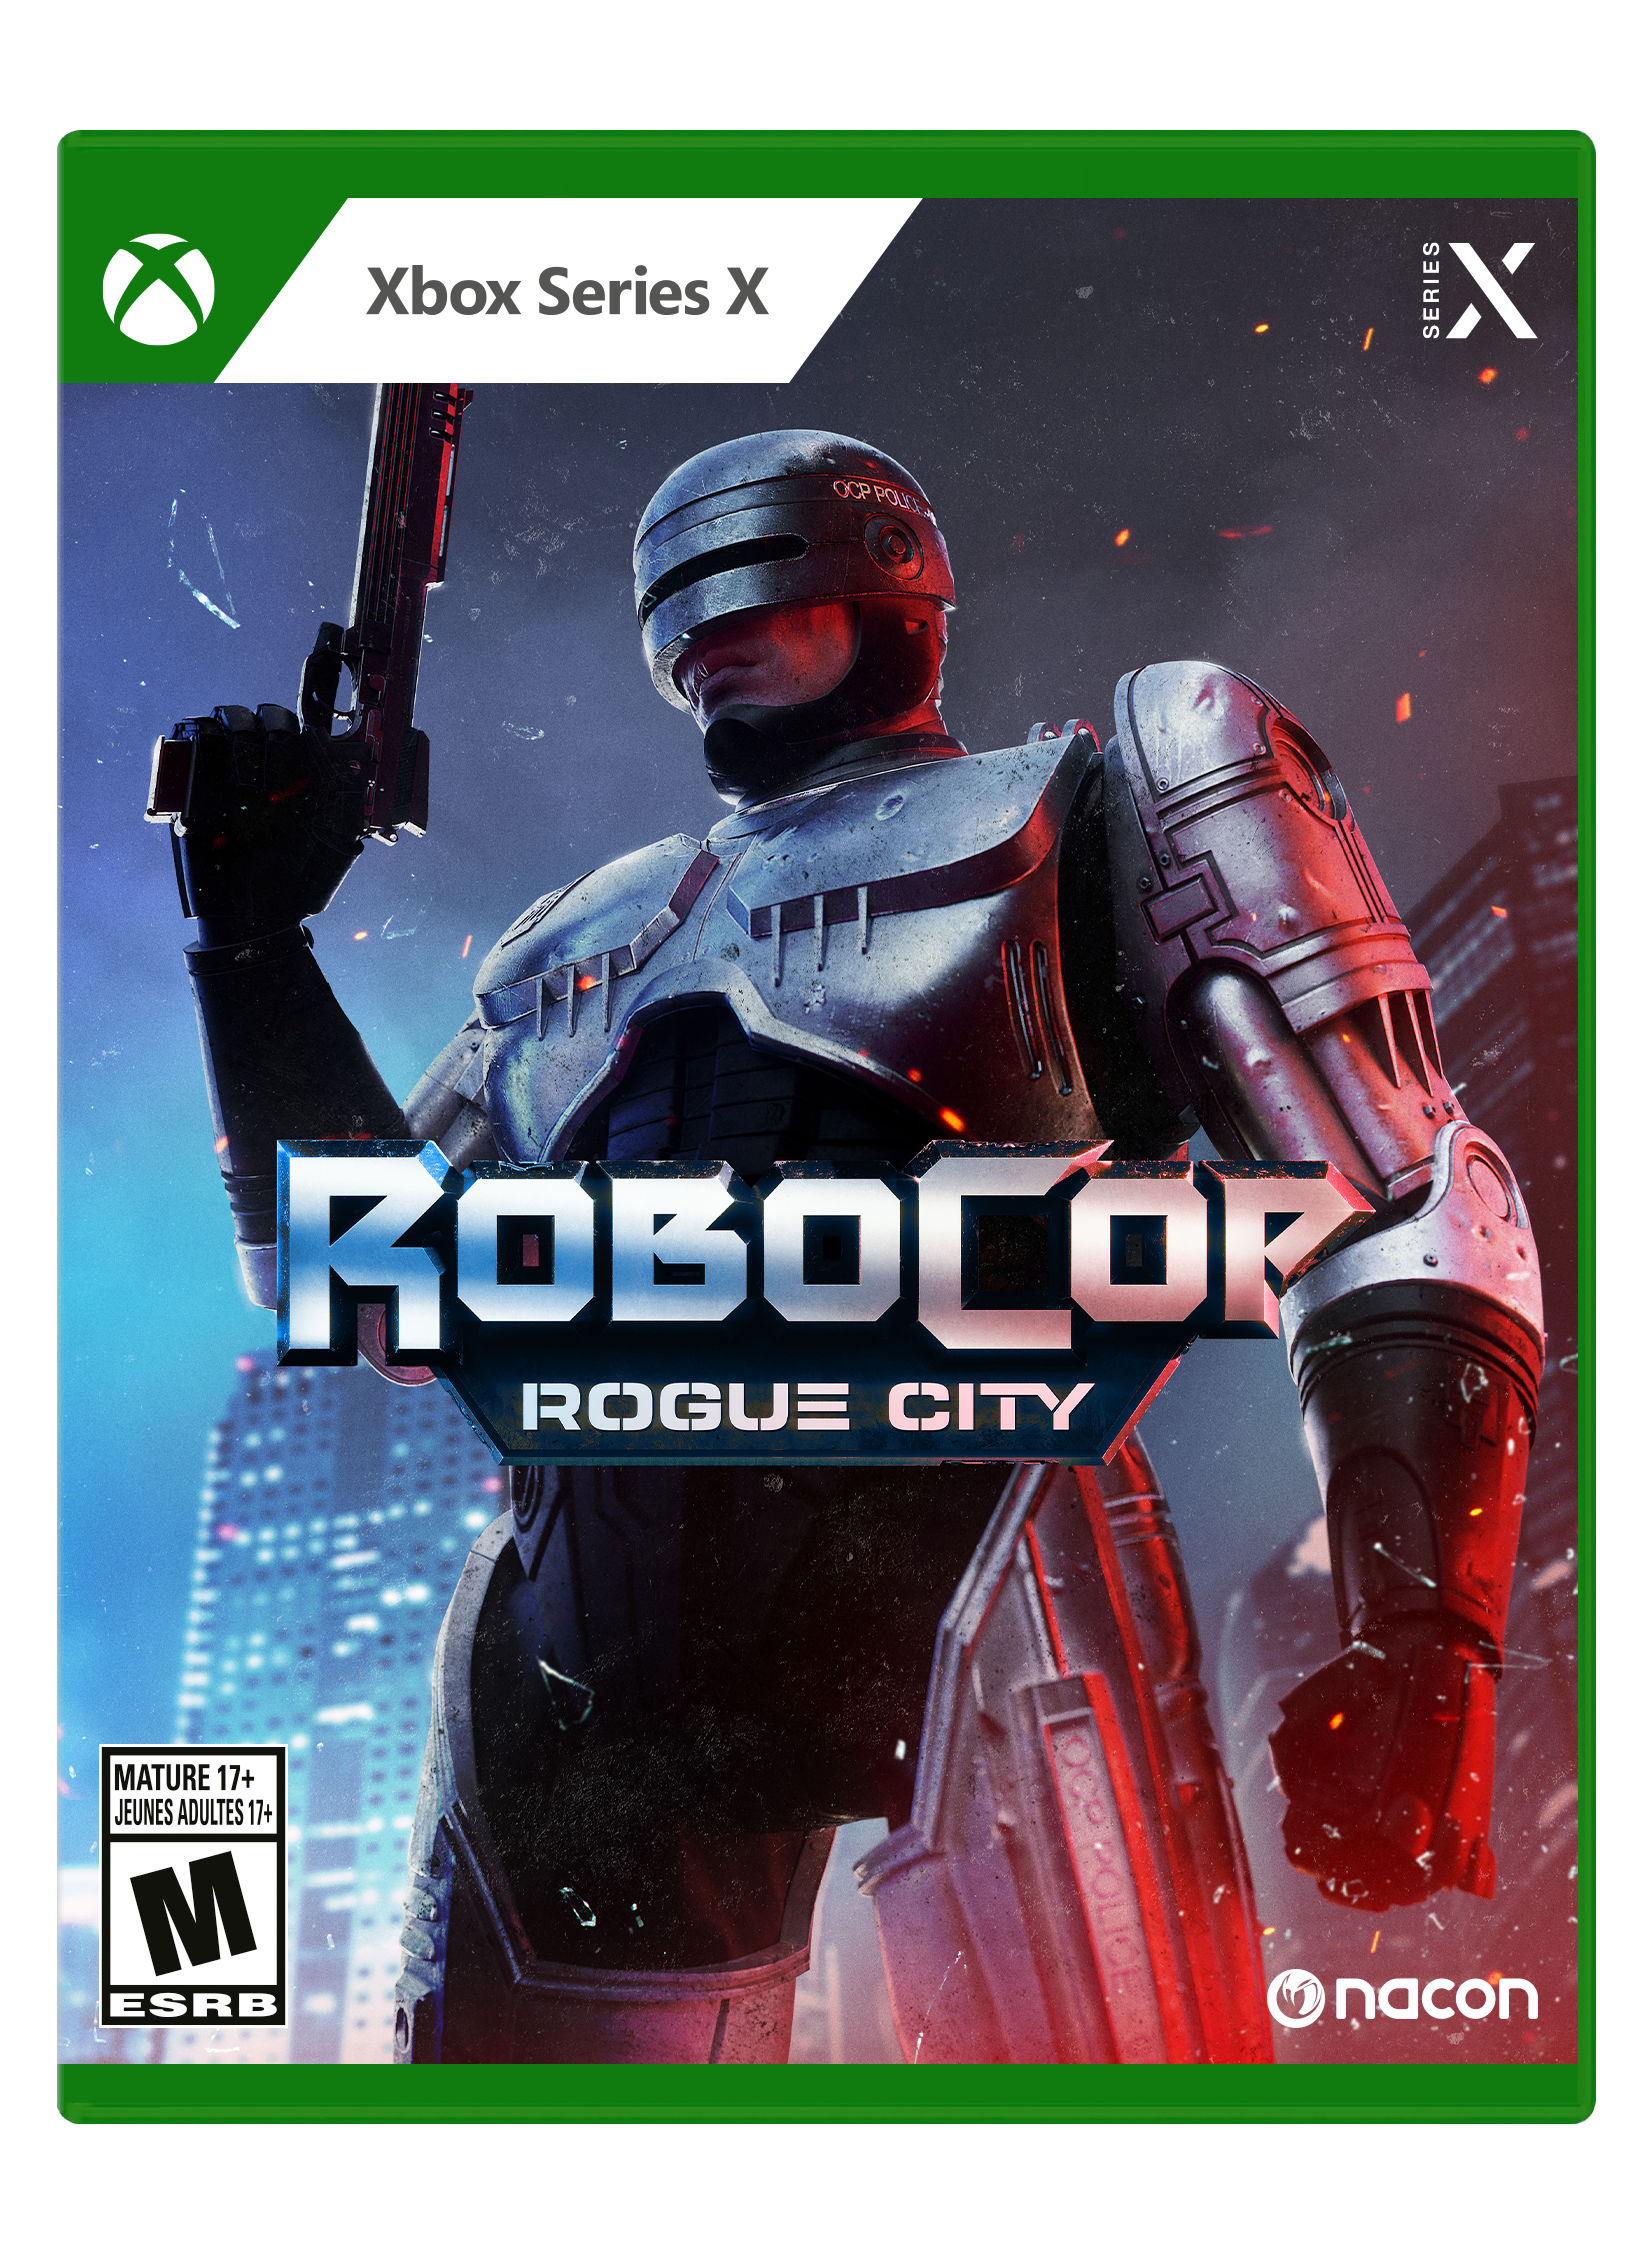 New ROBOCOP Game is INCREDIBLE - ROBOCOP ROGUE CITY, PS5 Gameplay 